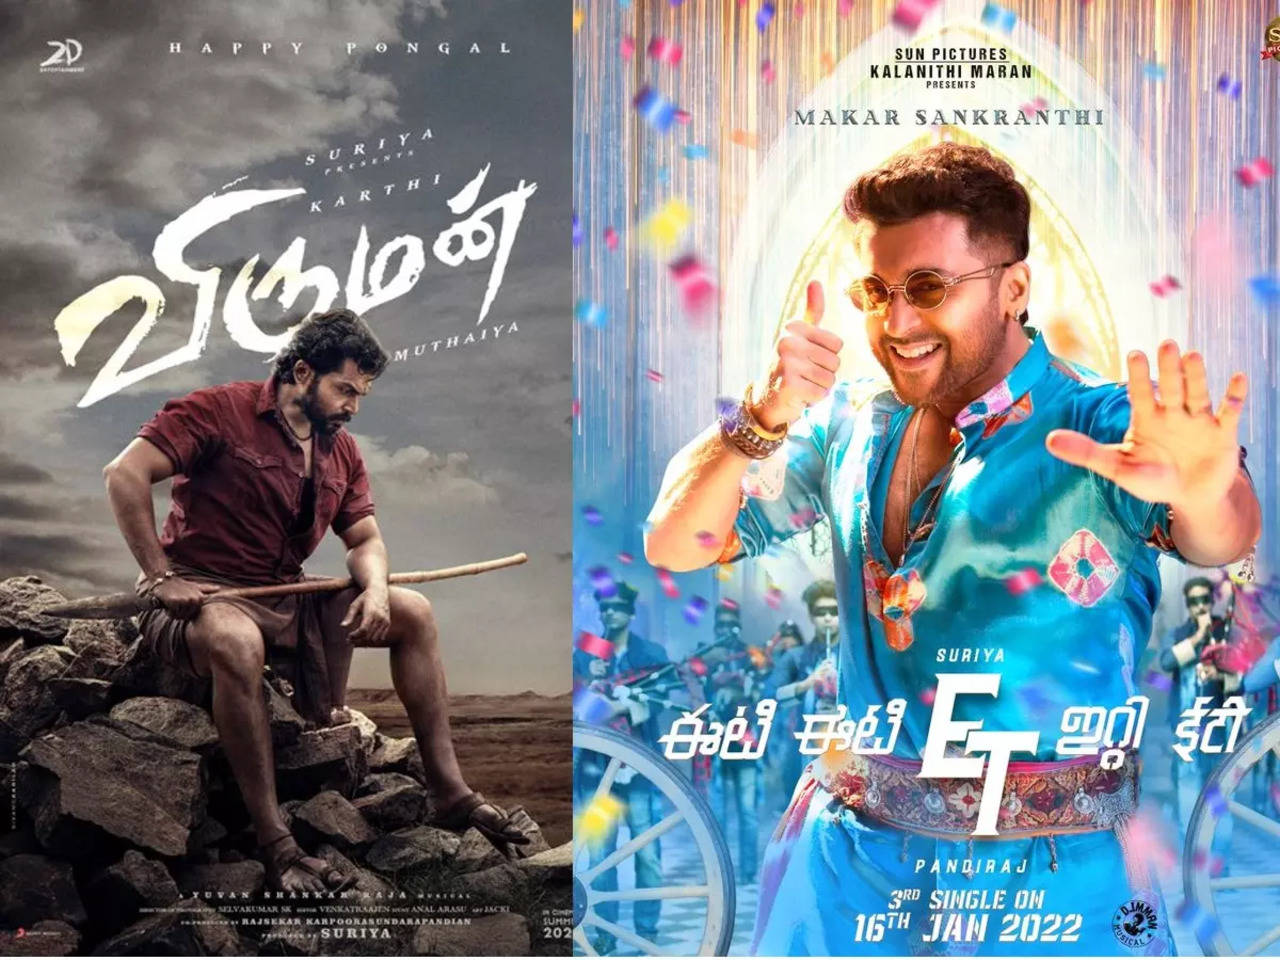 Suriya and Karthi release 'Viruman' first look poster; the third ...